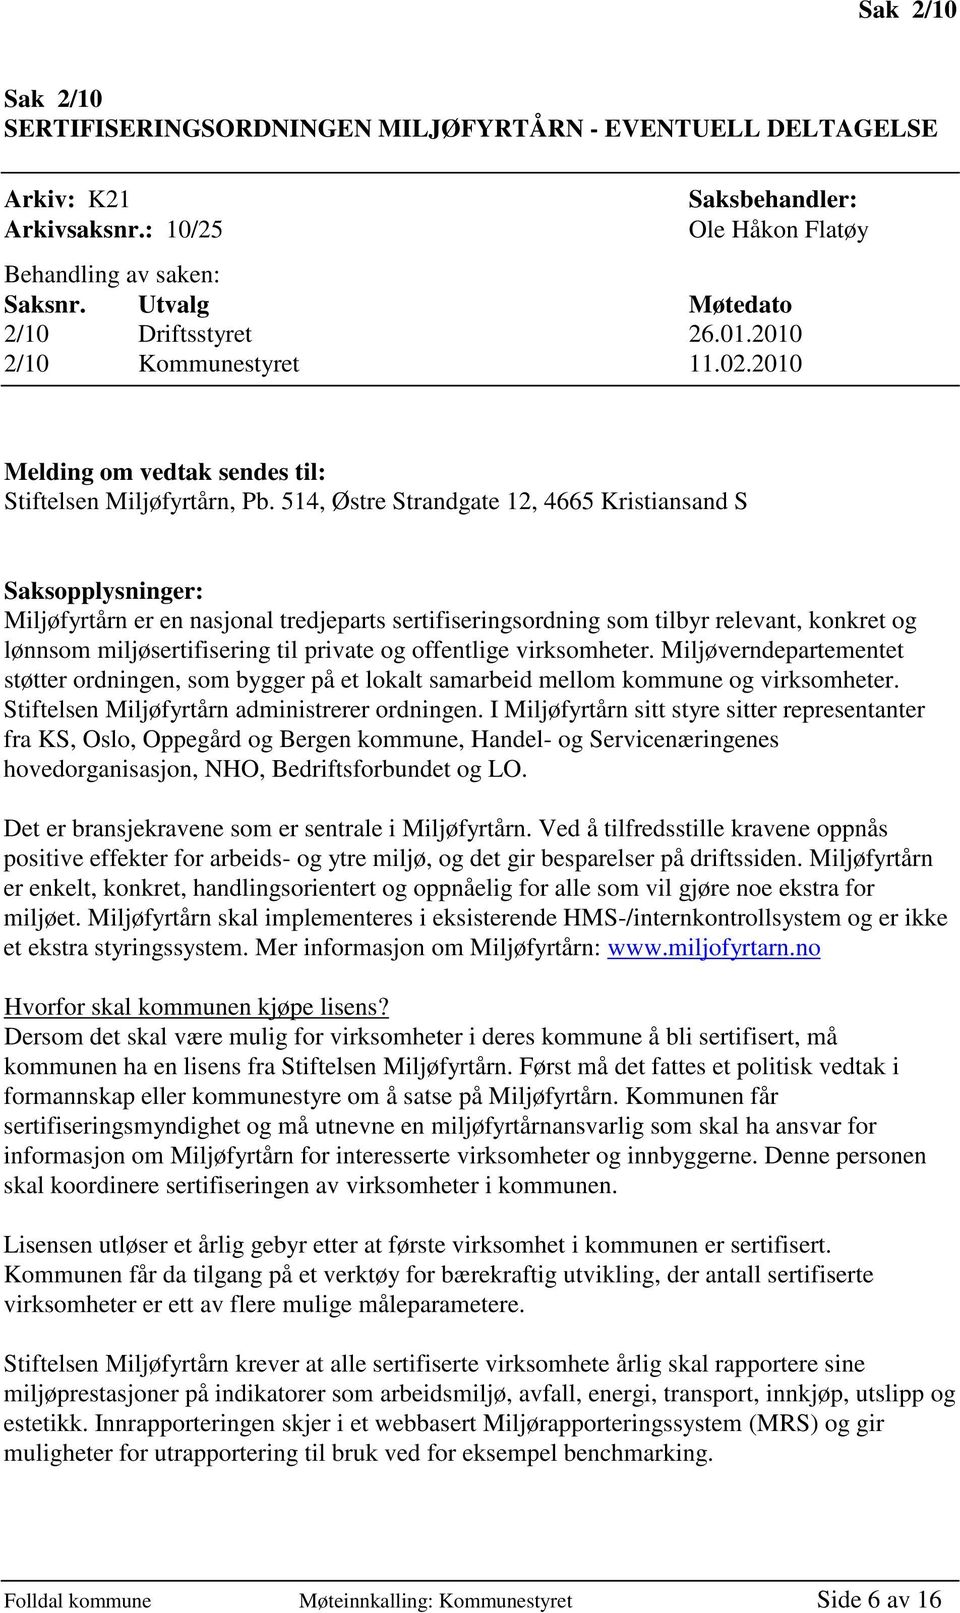 514, Østre Strandgate 12, 4665 Kristiansand S Saksopplysninger: Miljøfyrtårn er en nasjonal tredjeparts sertifiseringsordning som tilbyr relevant, konkret og lønnsom miljøsertifisering til private og